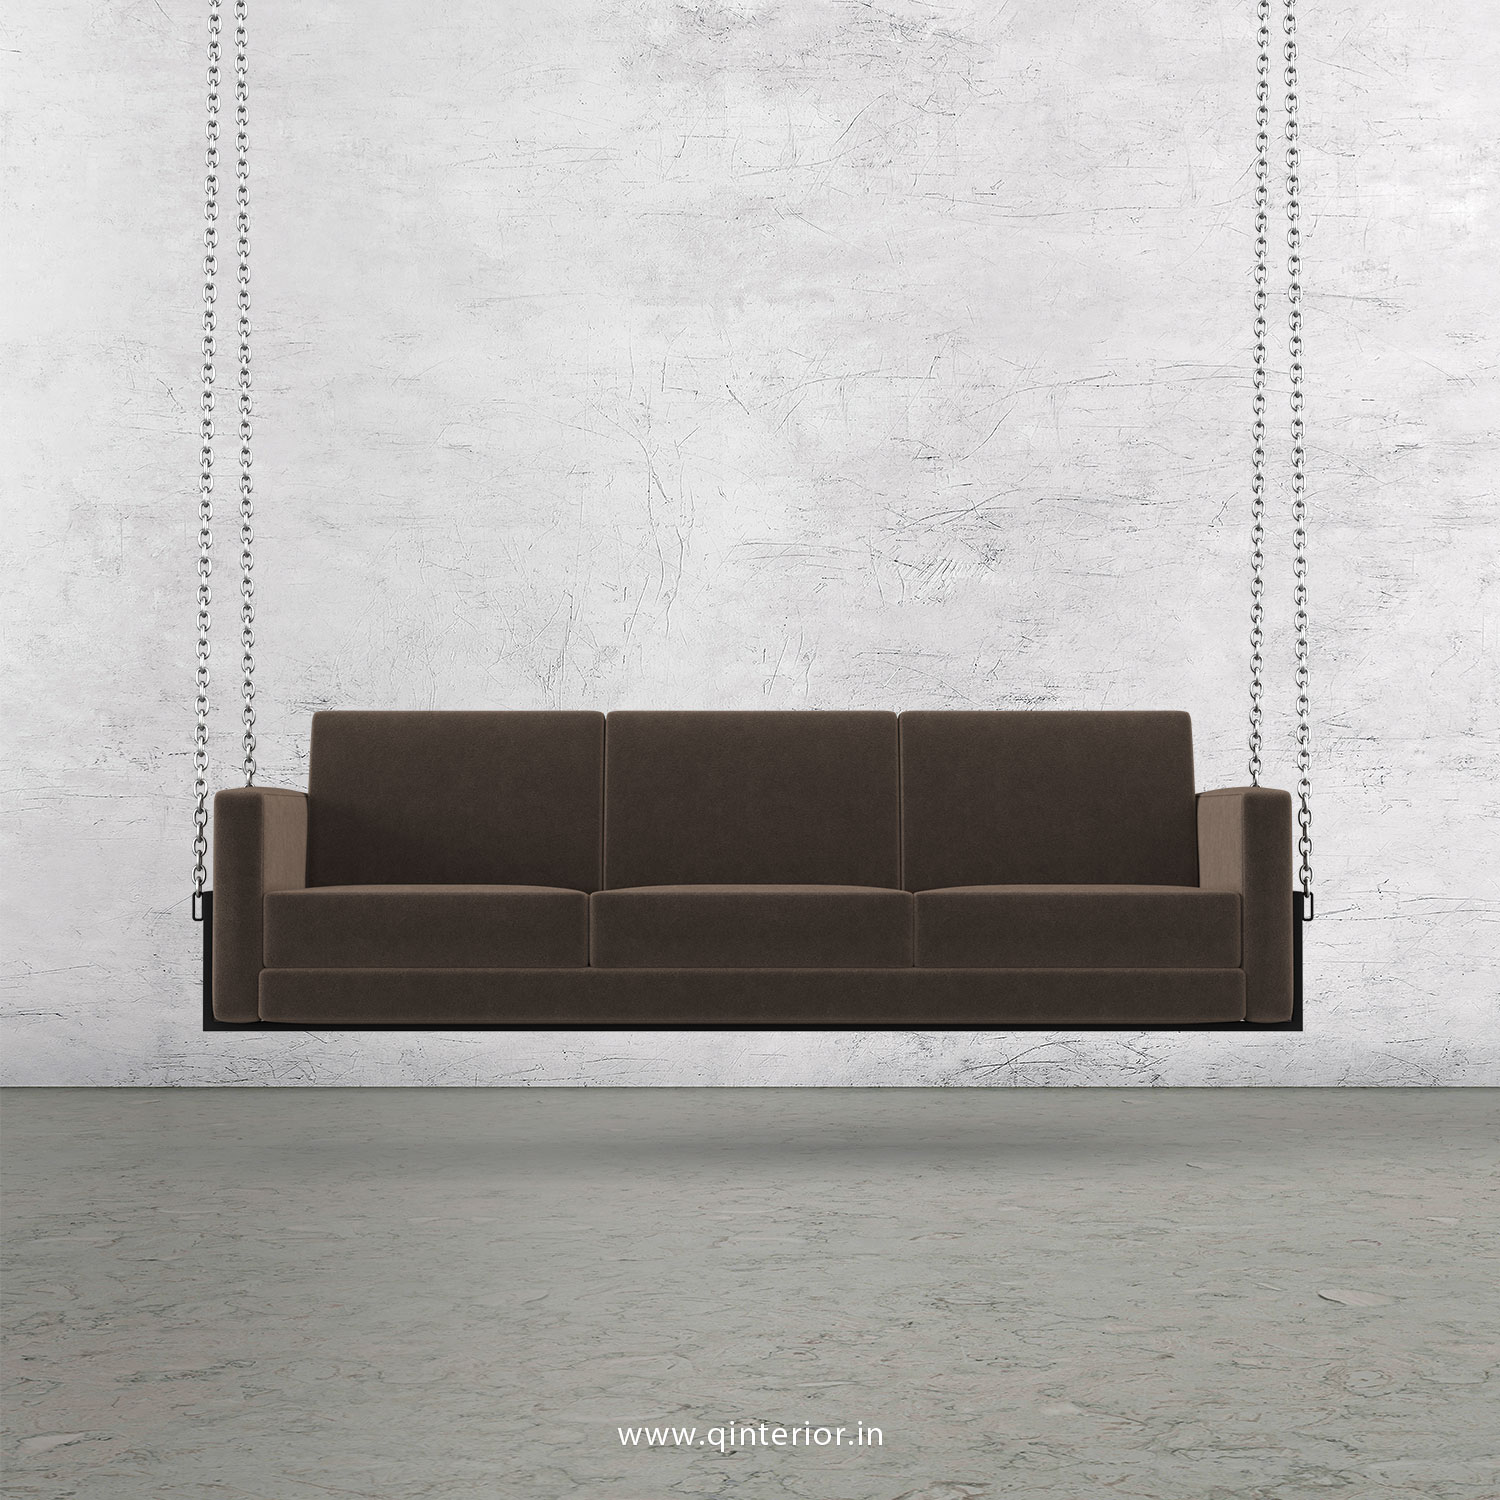 NIRVANA 3 Seater Swing Sofa in Velvet Fabric - SSF001 VL02